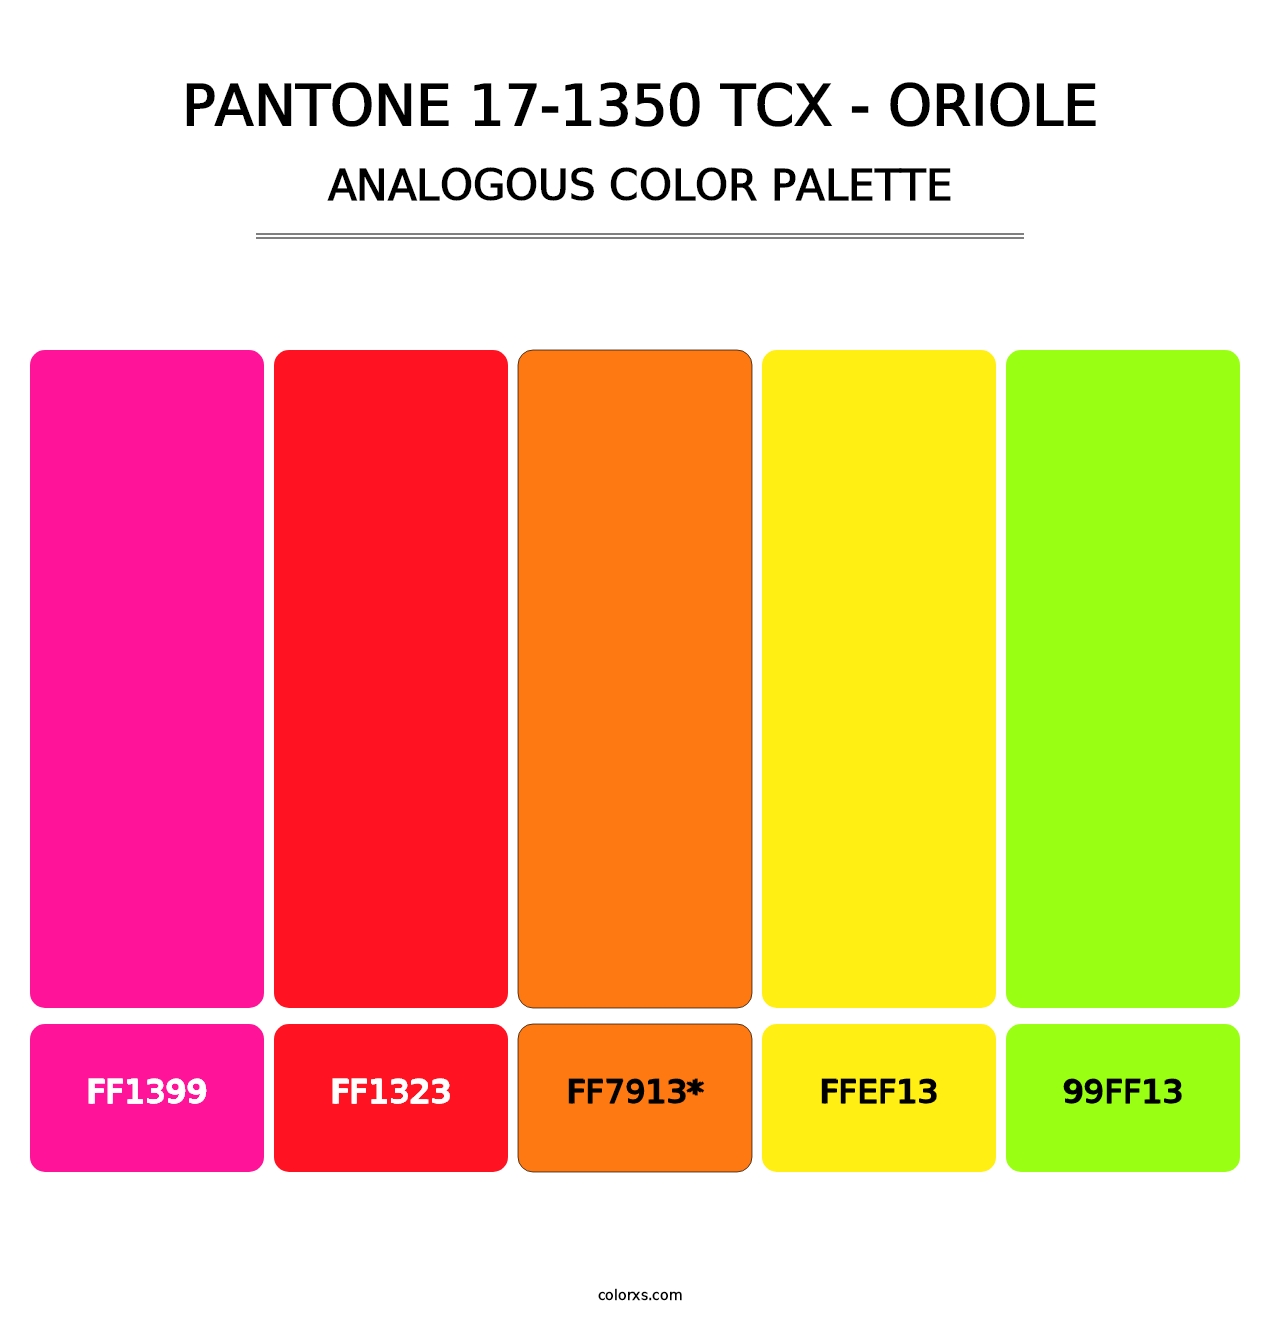 PANTONE 17-1350 TCX - Oriole - Analogous Color Palette